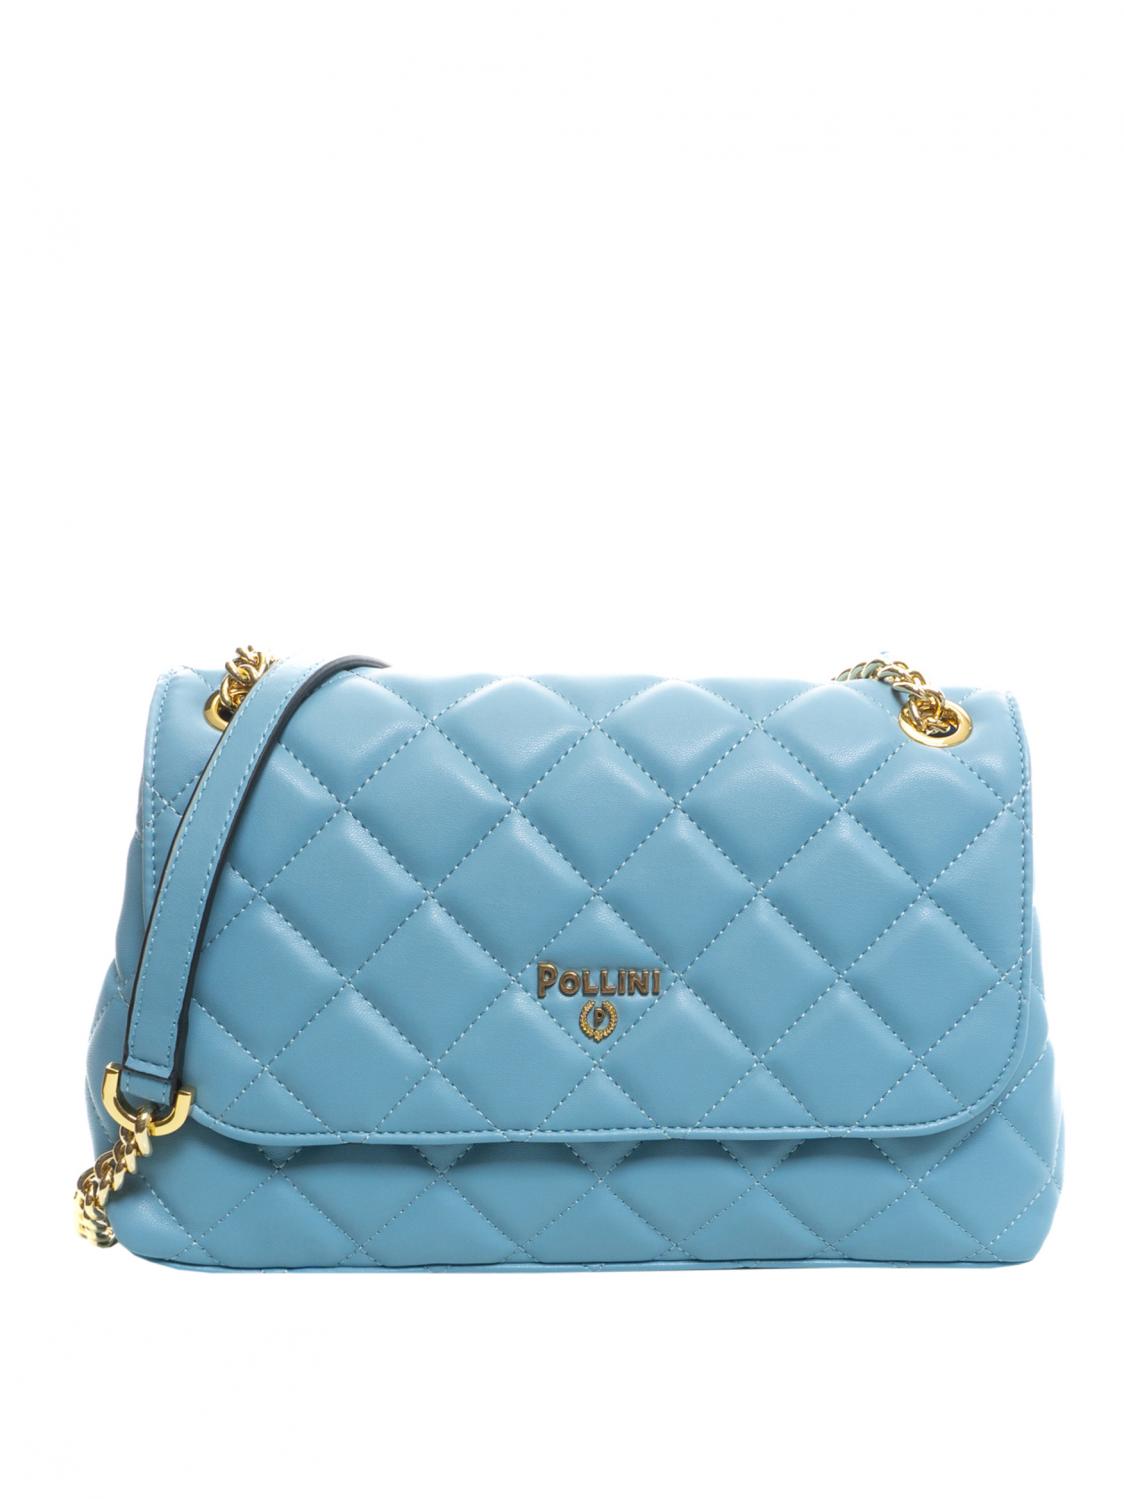 Pollini Soft Plain Shoulder Bag, Shoulder Bag Sky Blue - Buy At Outlet  Prices!